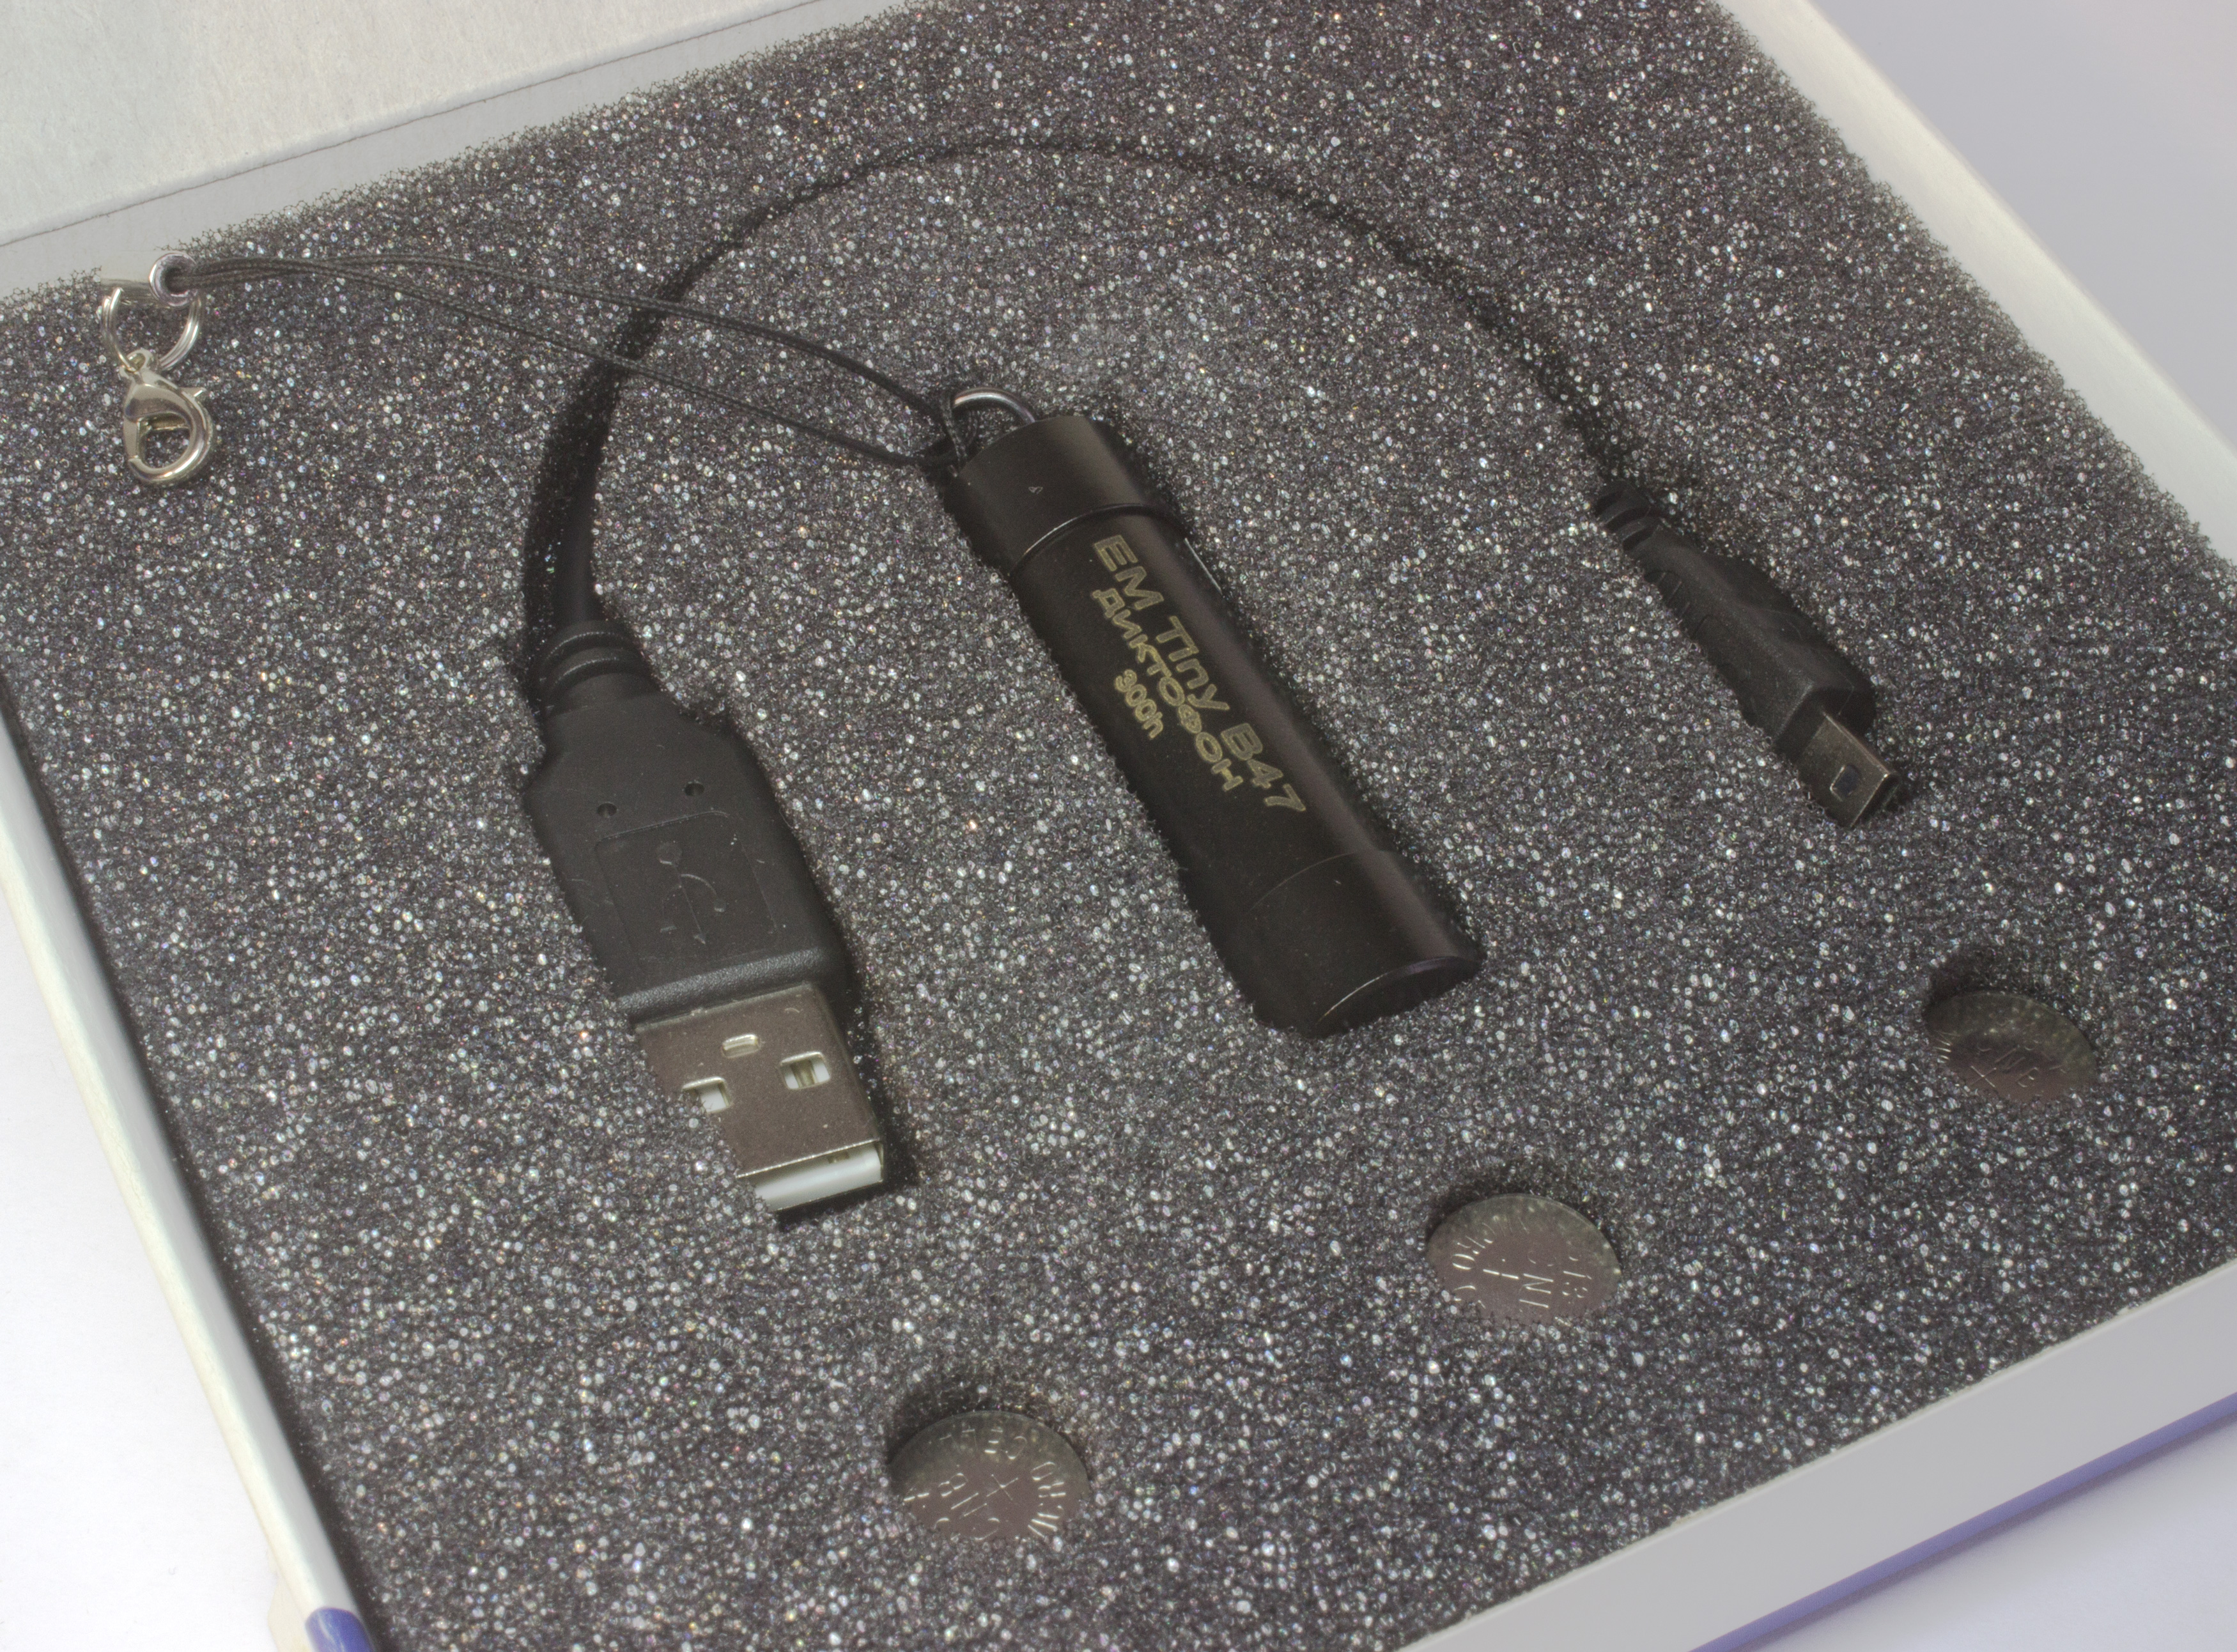 Все Телесистемы EM Tiny В47-300h (металл, размер d15*50мм, вес 19г, автономность до 40ч, USB 1.1, батарейки) видеонаблюдения в магазине Vidos Group